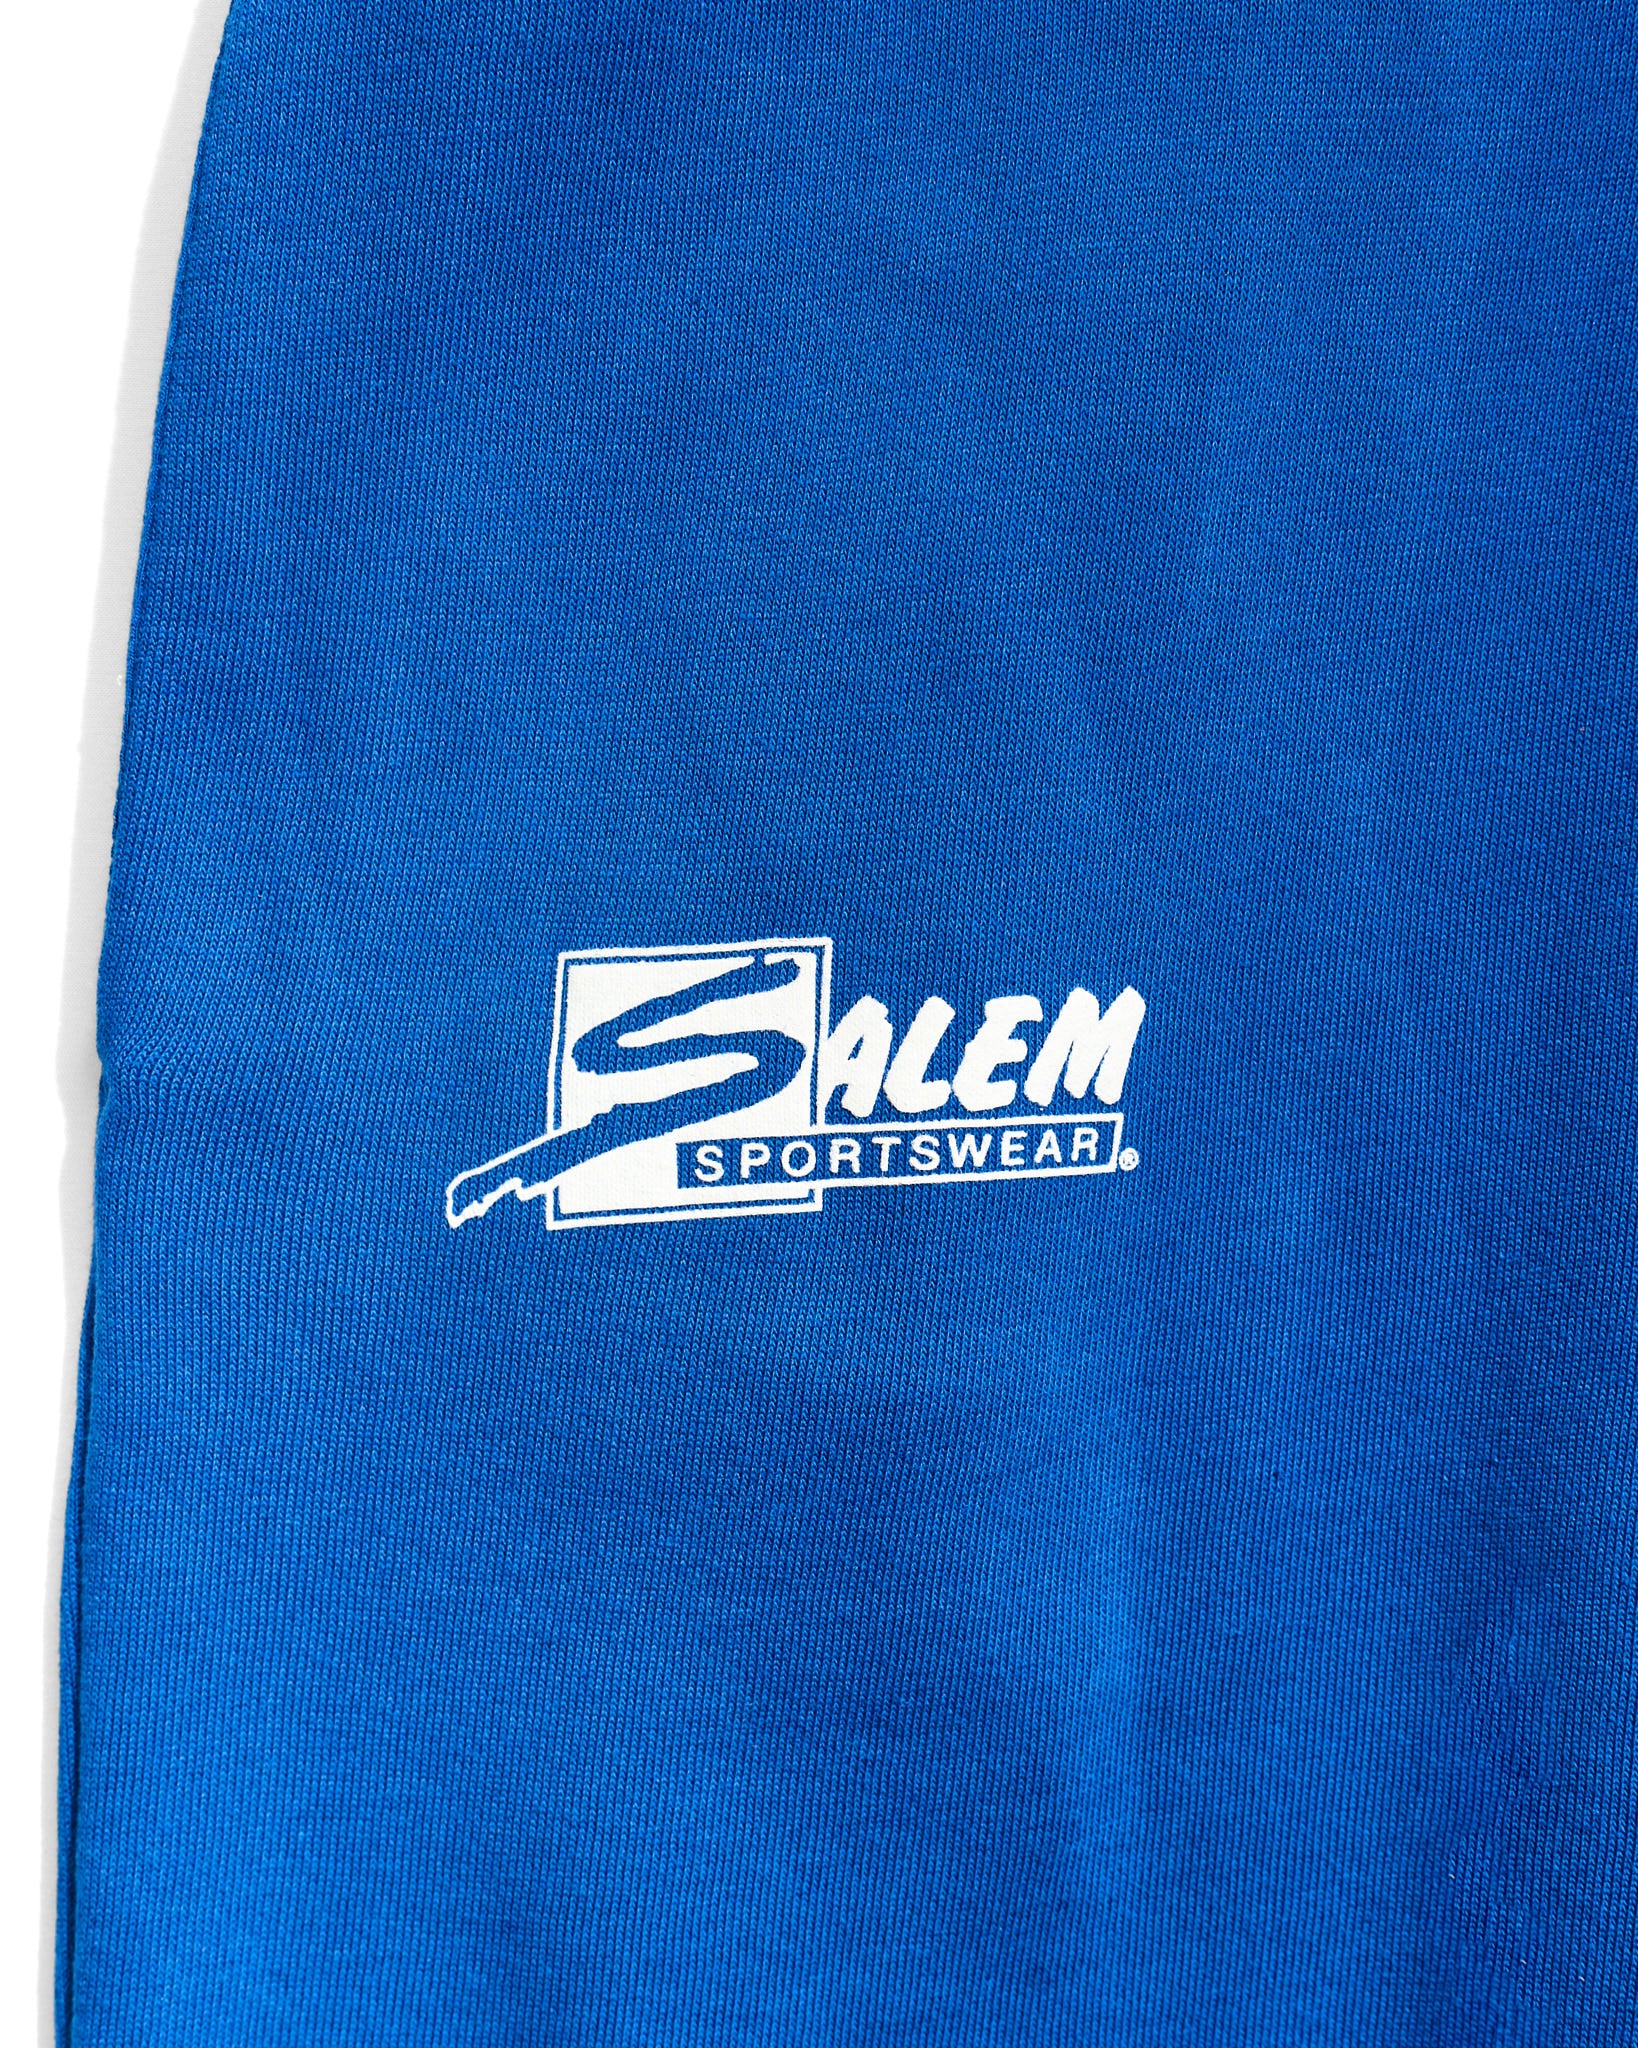 Salem Sportswear Sweatpants